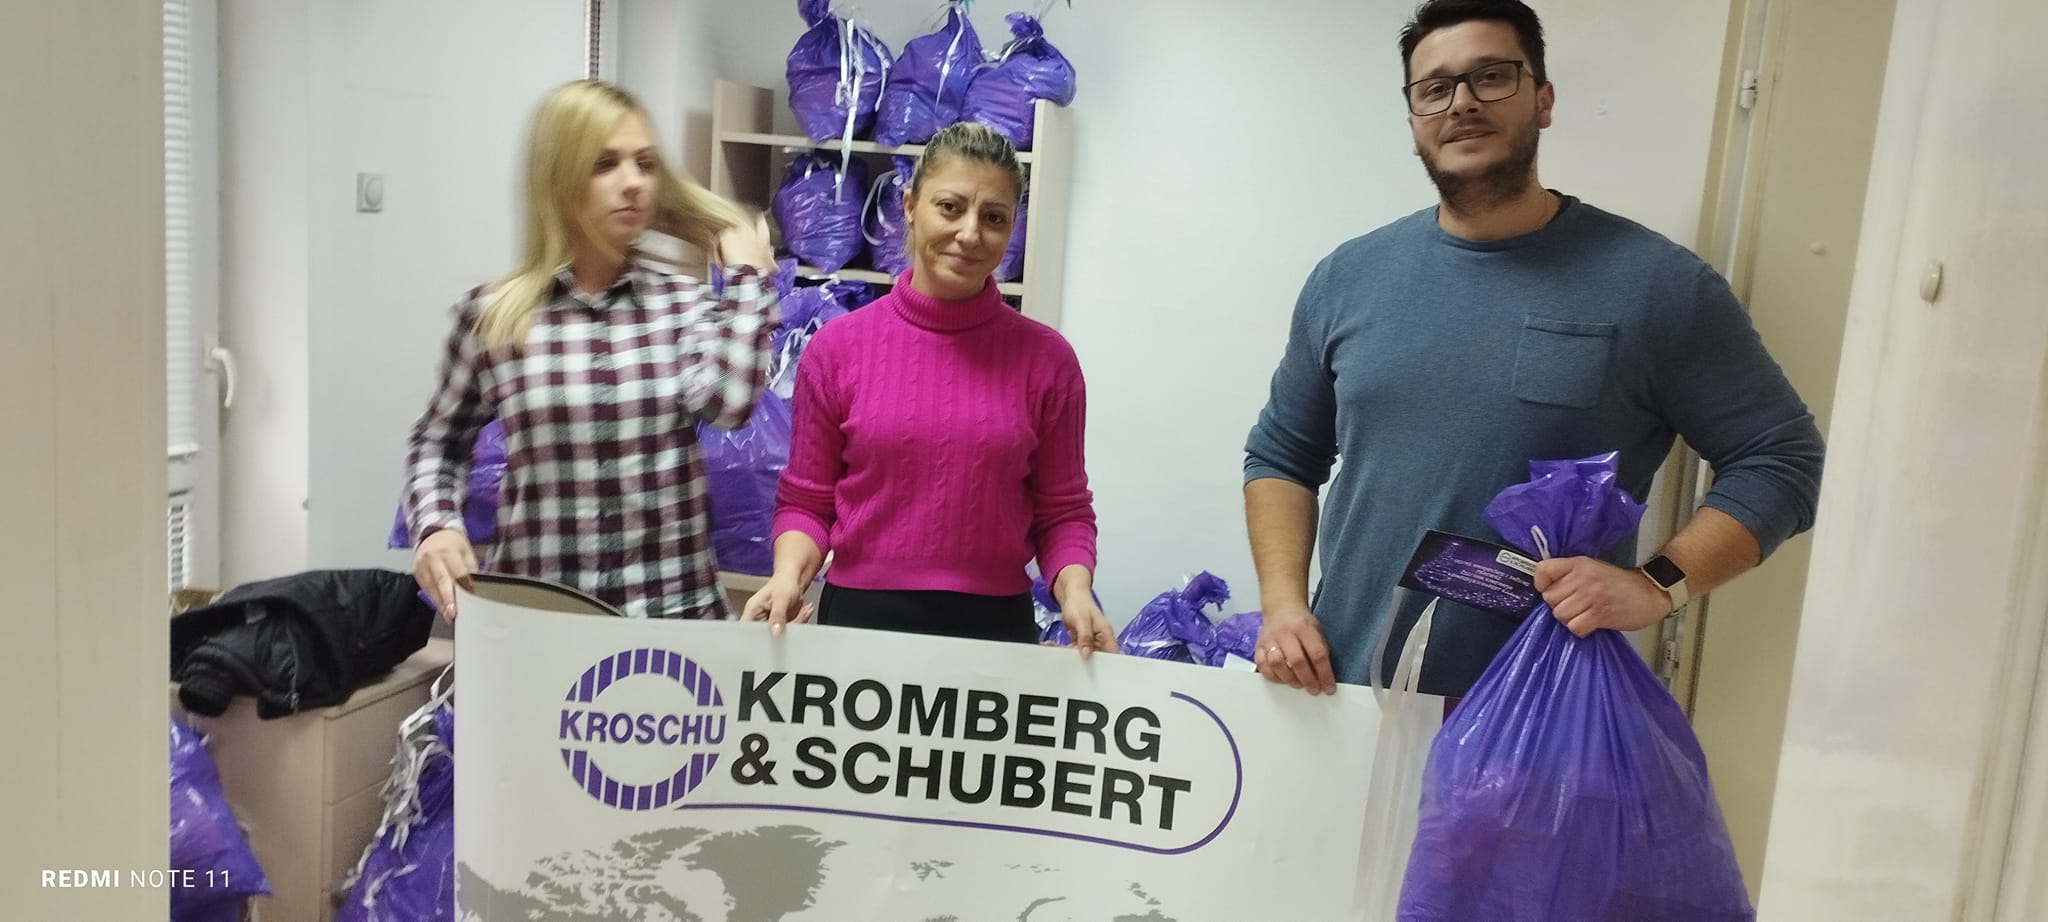 Kompanija Kromberg & Schubert iz Kruševca donira 70 paketića udruženju “Dečija sreća” iz Paraćina